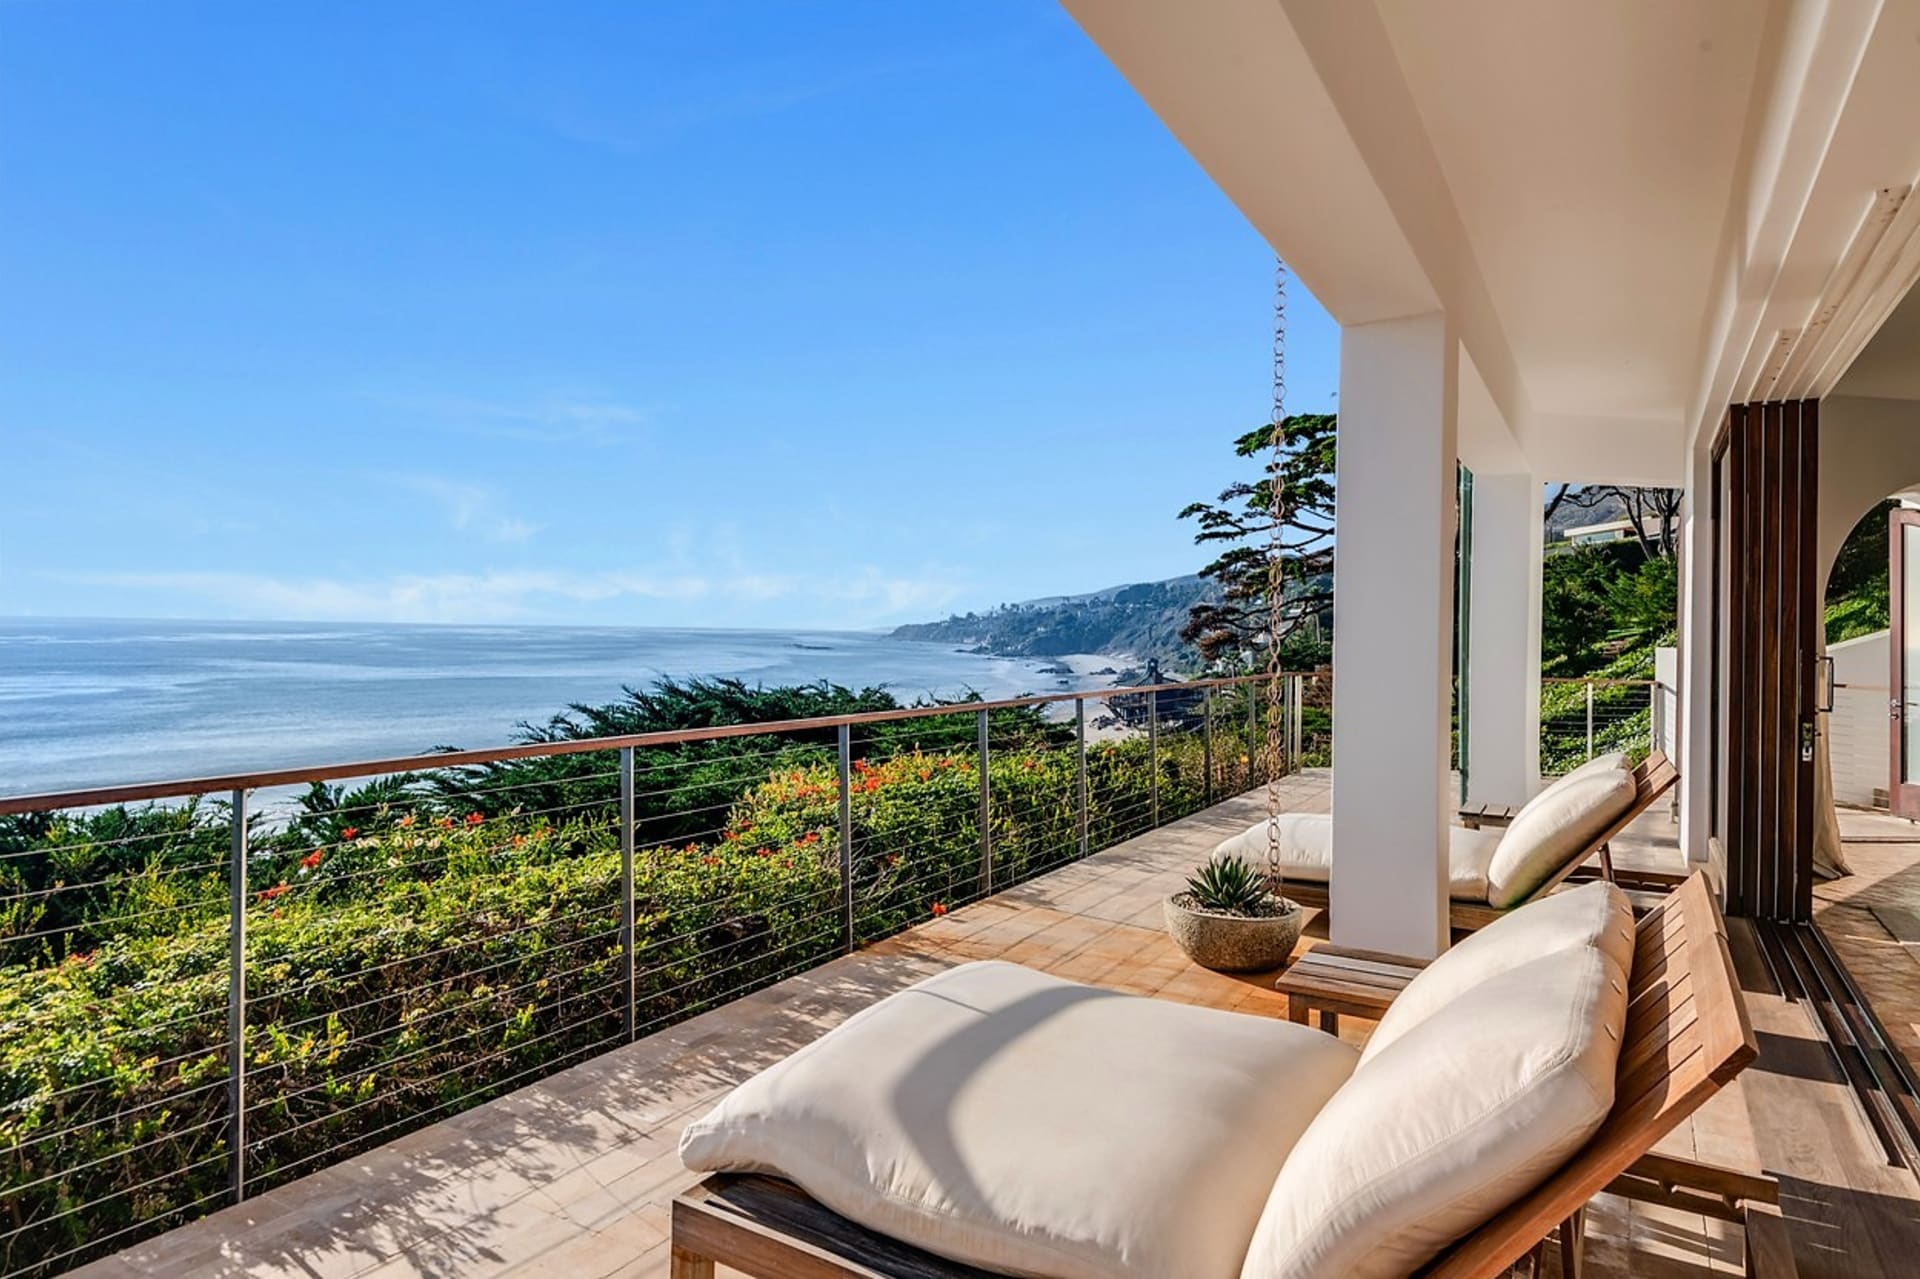 Luxusní sídlo Kim Kardashian v Malibu: Velké apartmá se dvěma samostatnými ložnicemi s vlastním vchodem z vnitřního dvora se nachází v patře. Je odtud nádherný výhled na oceán.